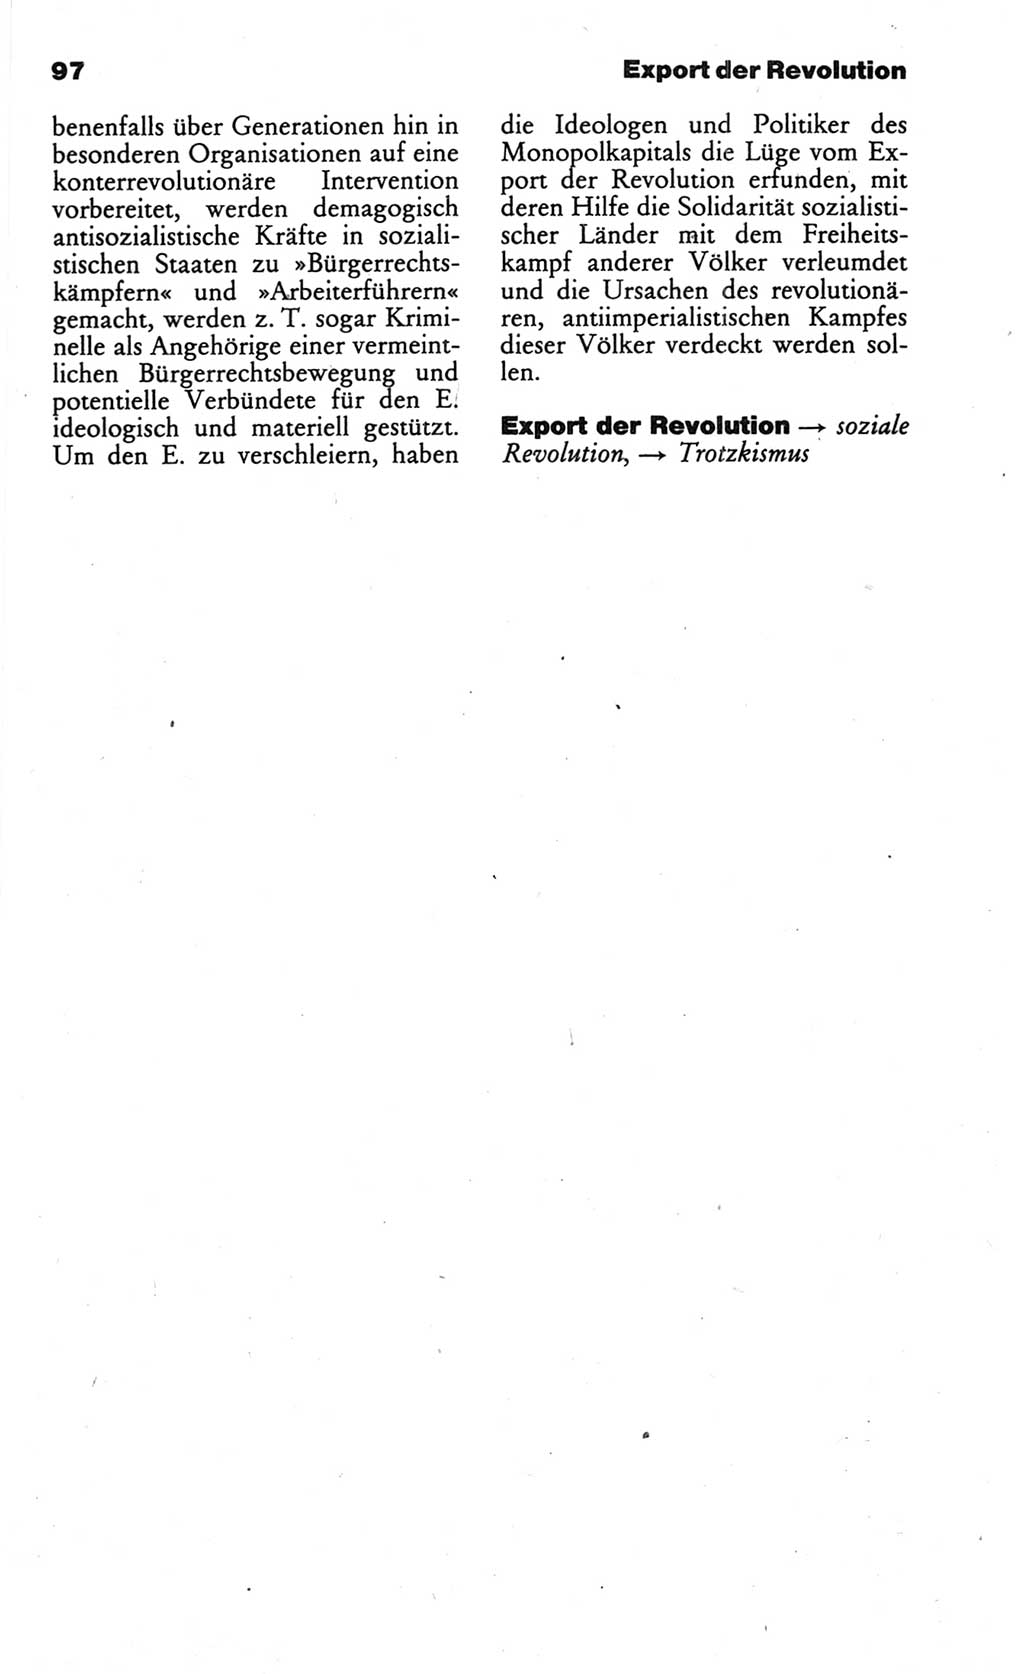 Wörterbuch des wissenschaftlichen Kommunismus [Deutsche Demokratische Republik (DDR)] 1986, Seite 97 (Wb. wiss. Komm. DDR 1986, S. 97)